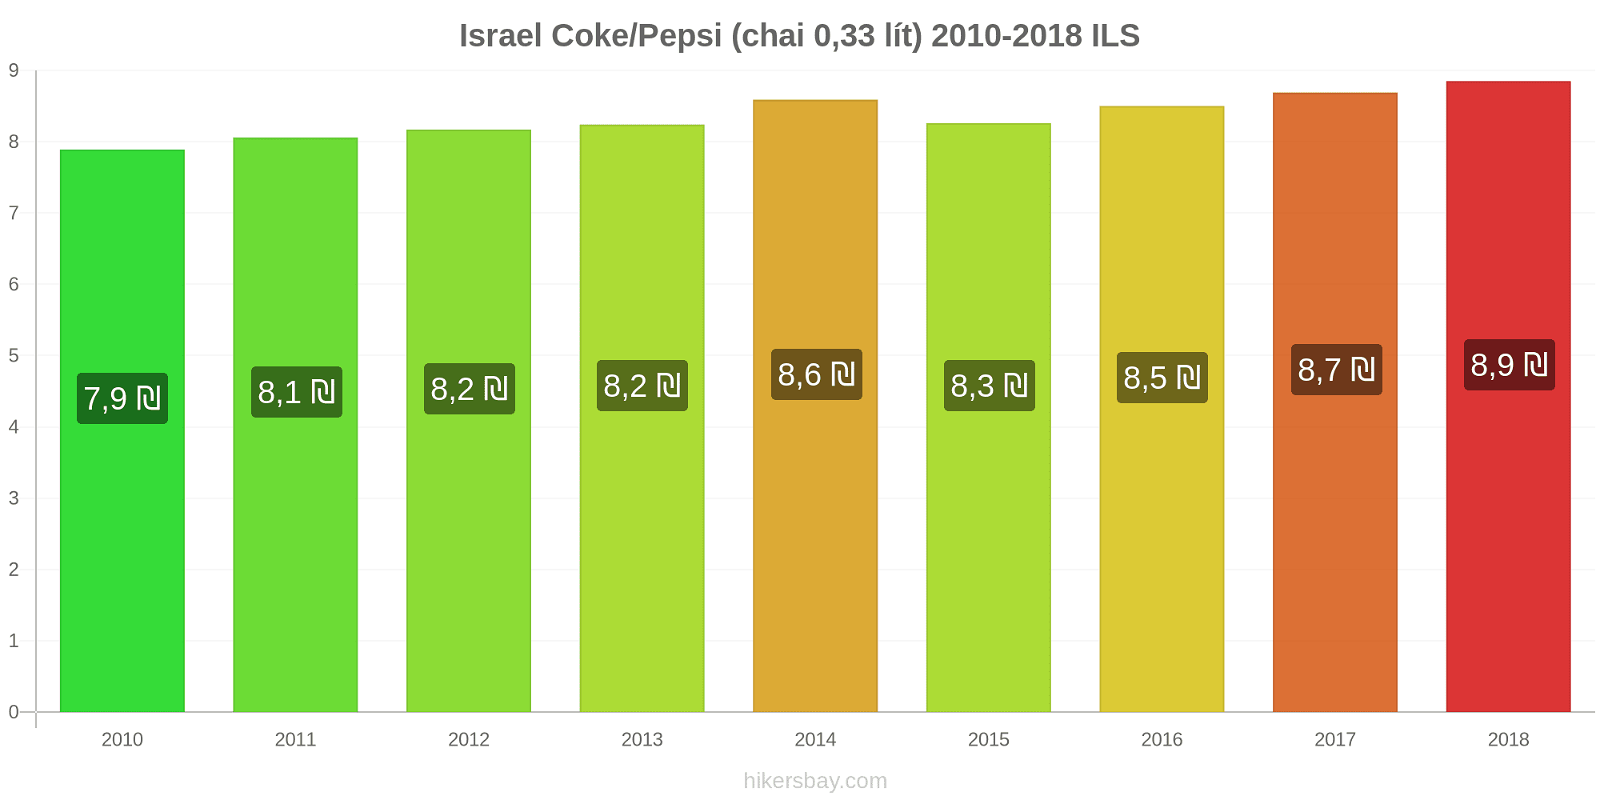 Israel thay đổi giá cả Coca-Cola/Pepsi (chai 0.33 lít) hikersbay.com